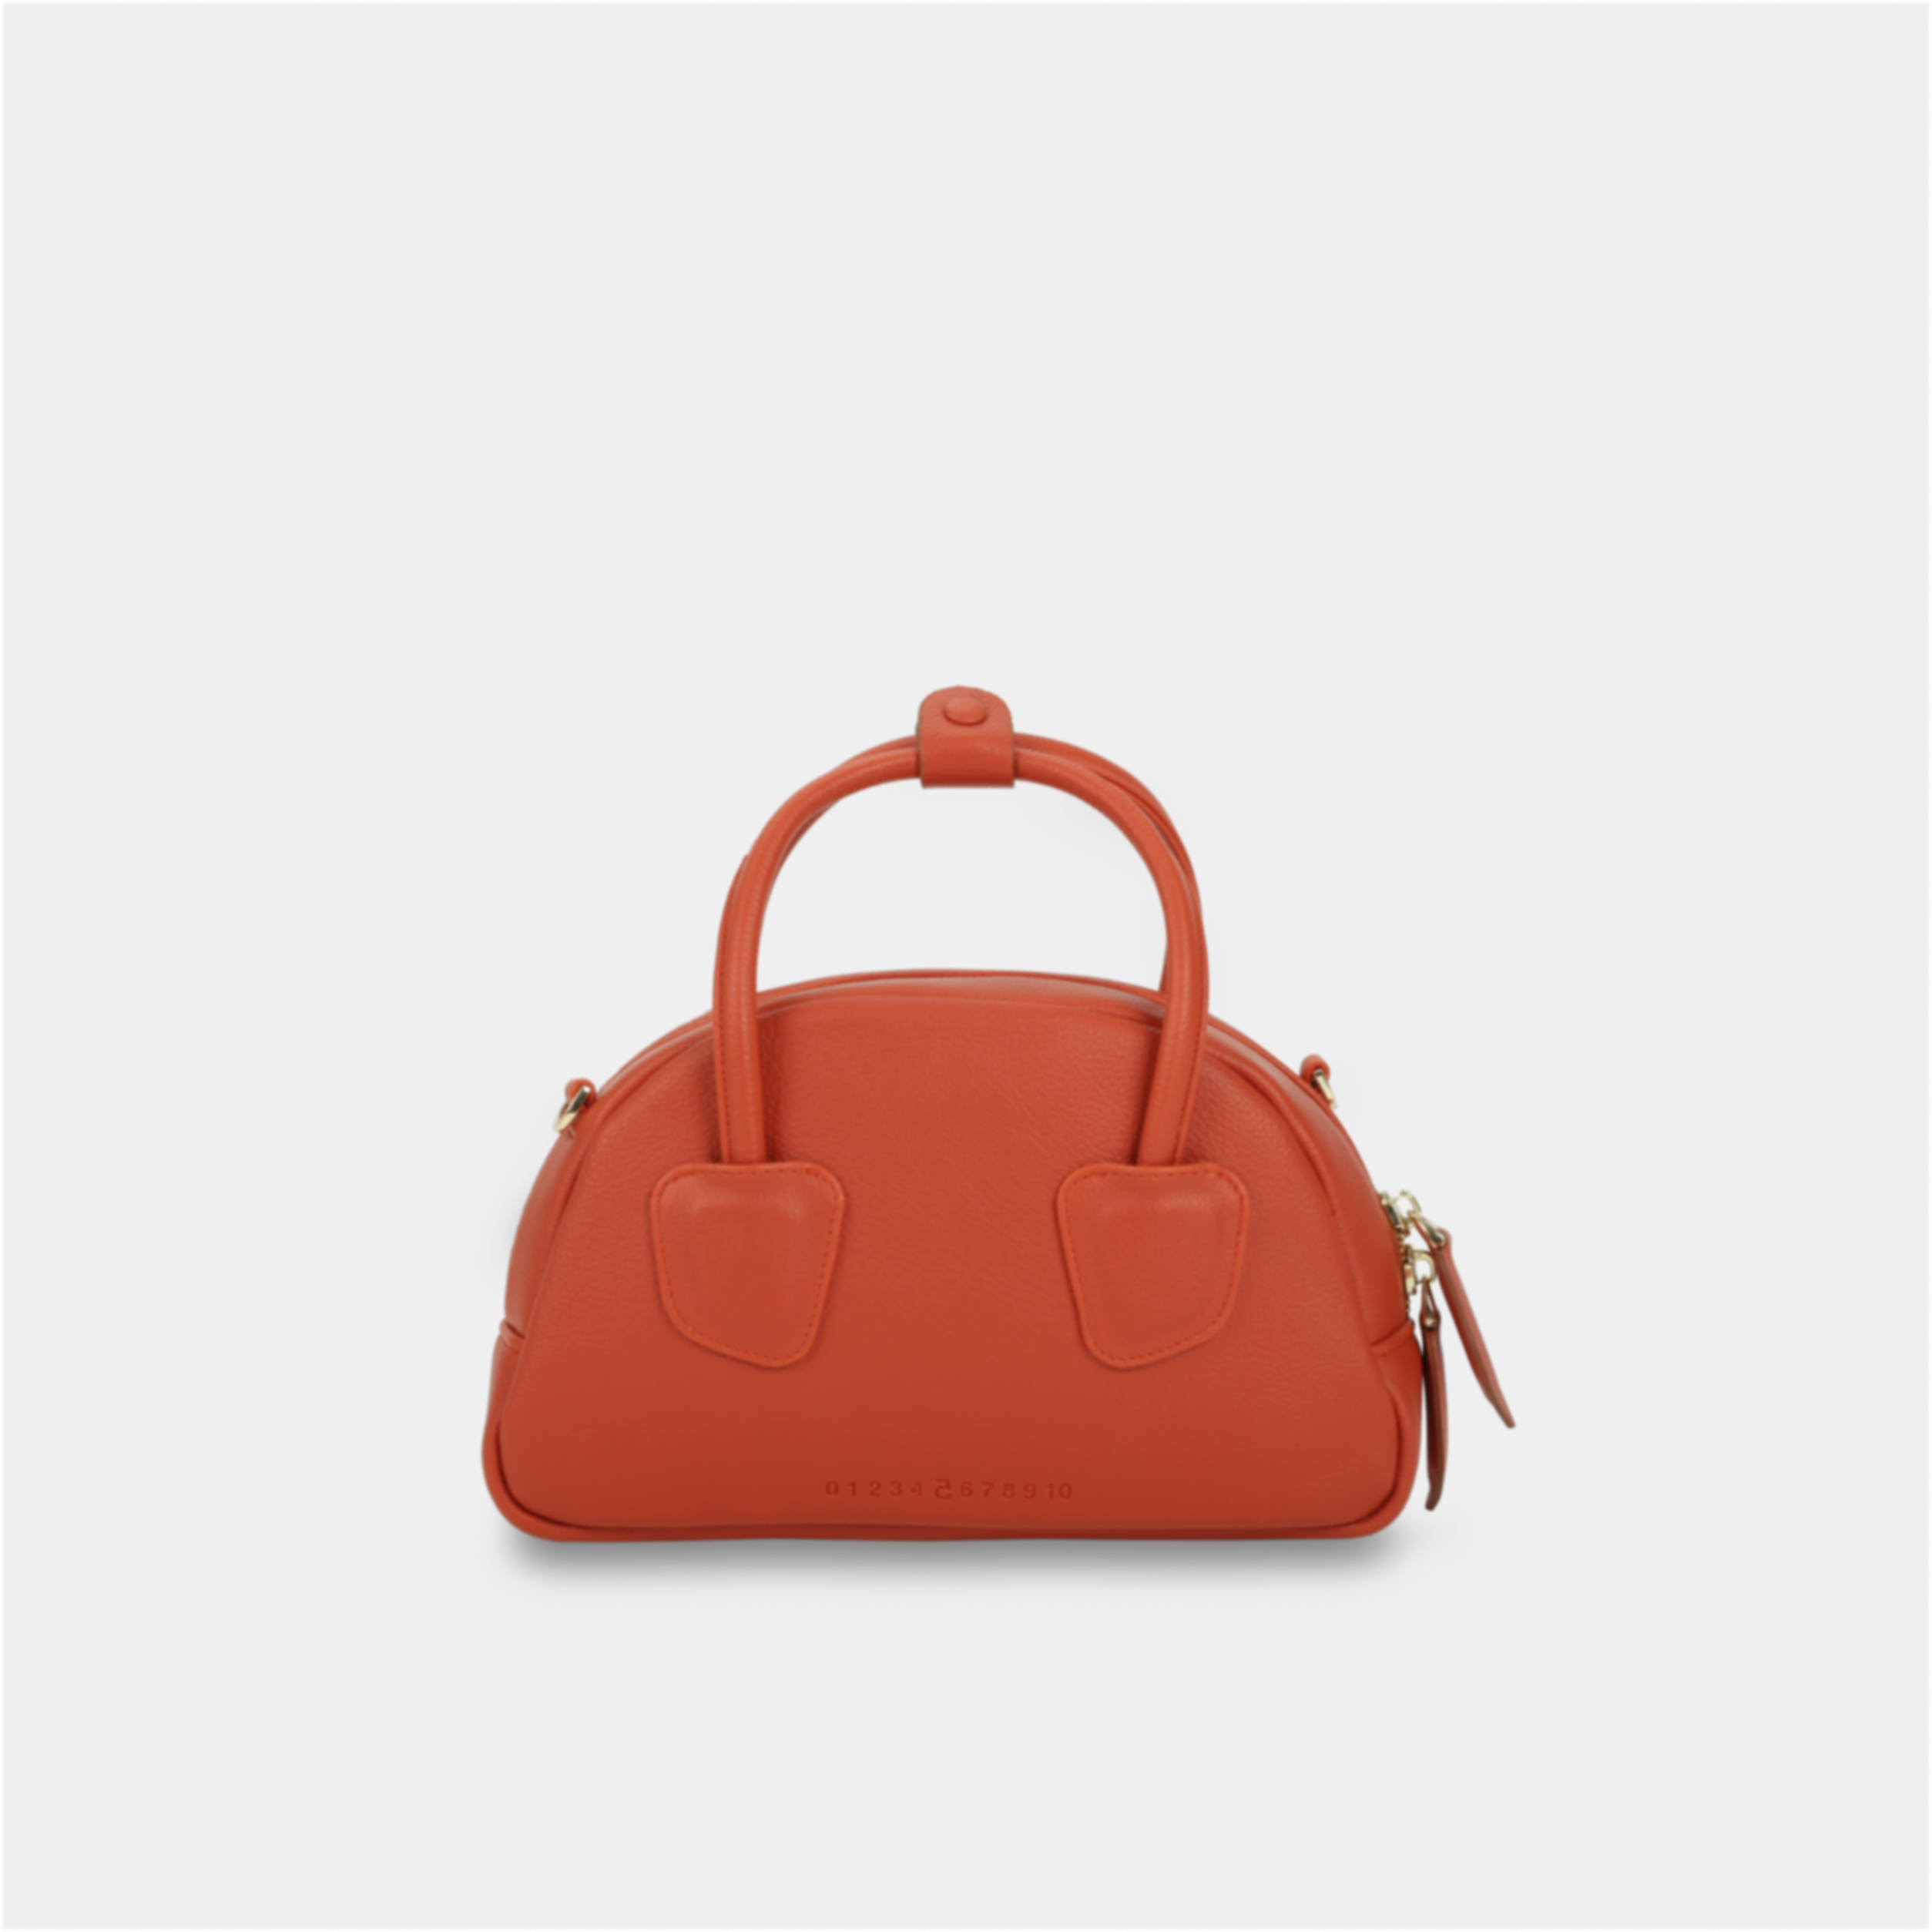 Túi xách TACOS màu cam đỏ size lớn (M)